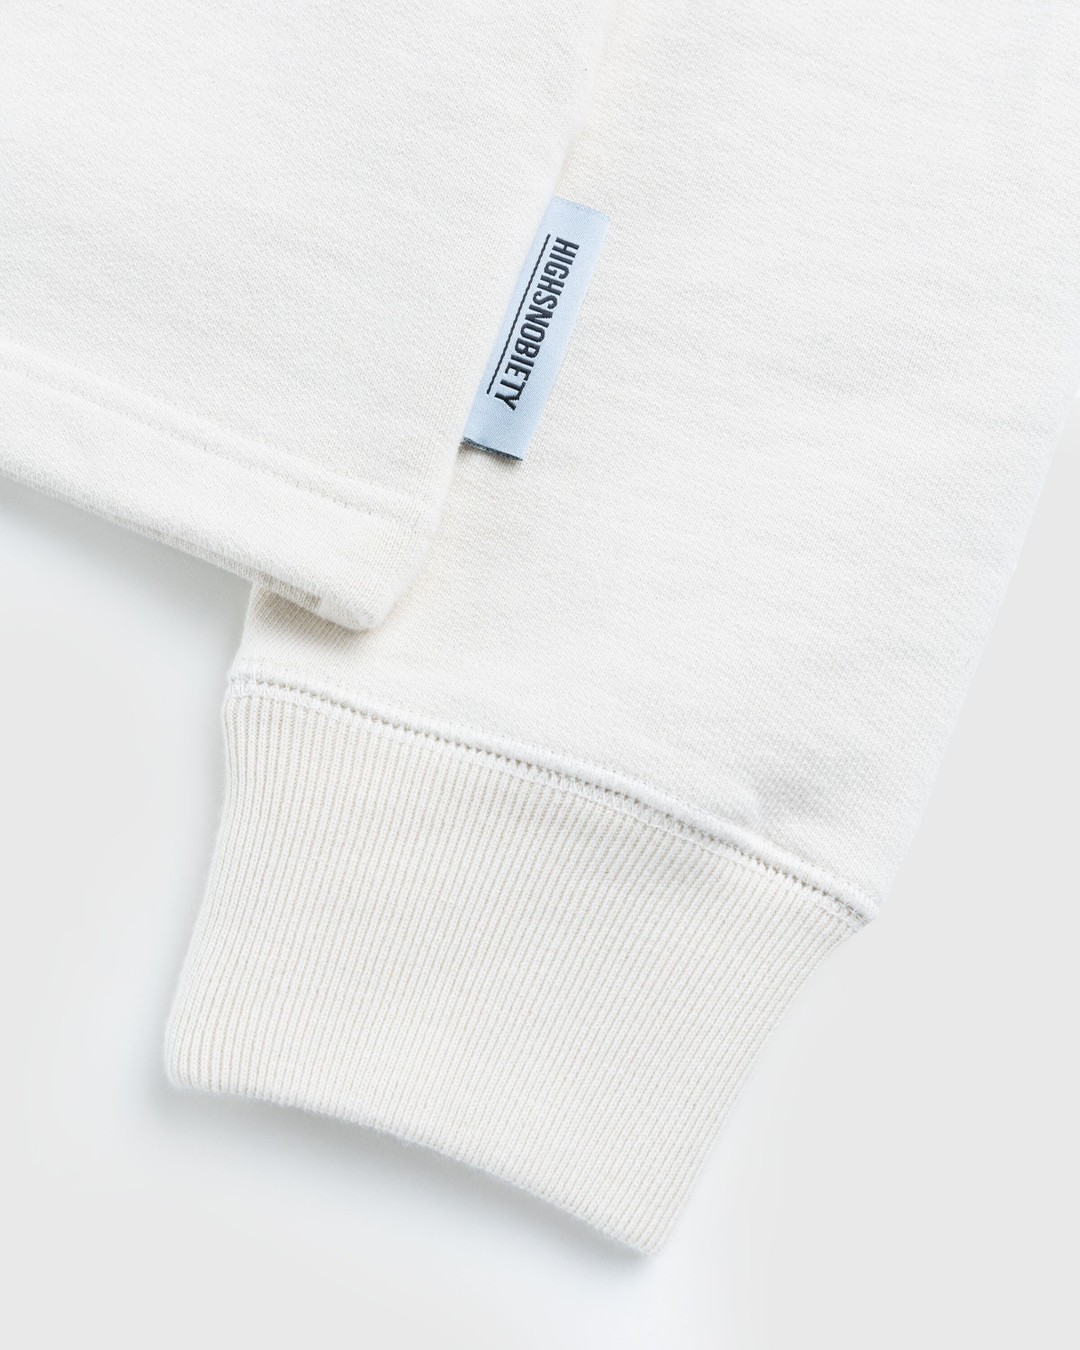 Highsnobiety – Fleece Quarter Zip Off-White - Zip-Up Sweats - Beige - Image 6